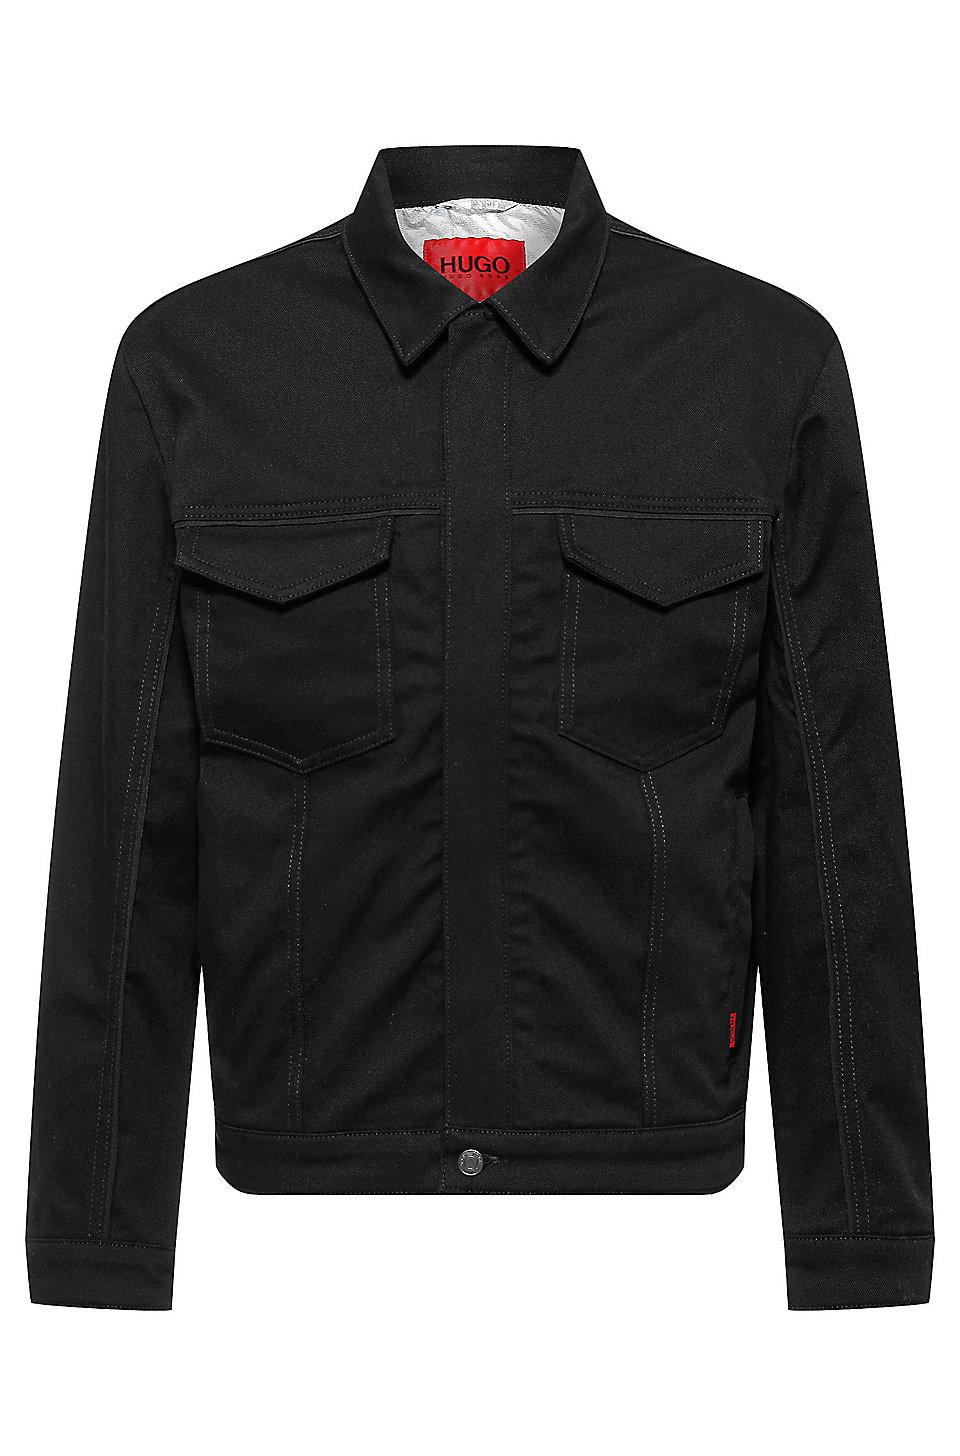 HUGO - jacket in black comfort-stretch denim